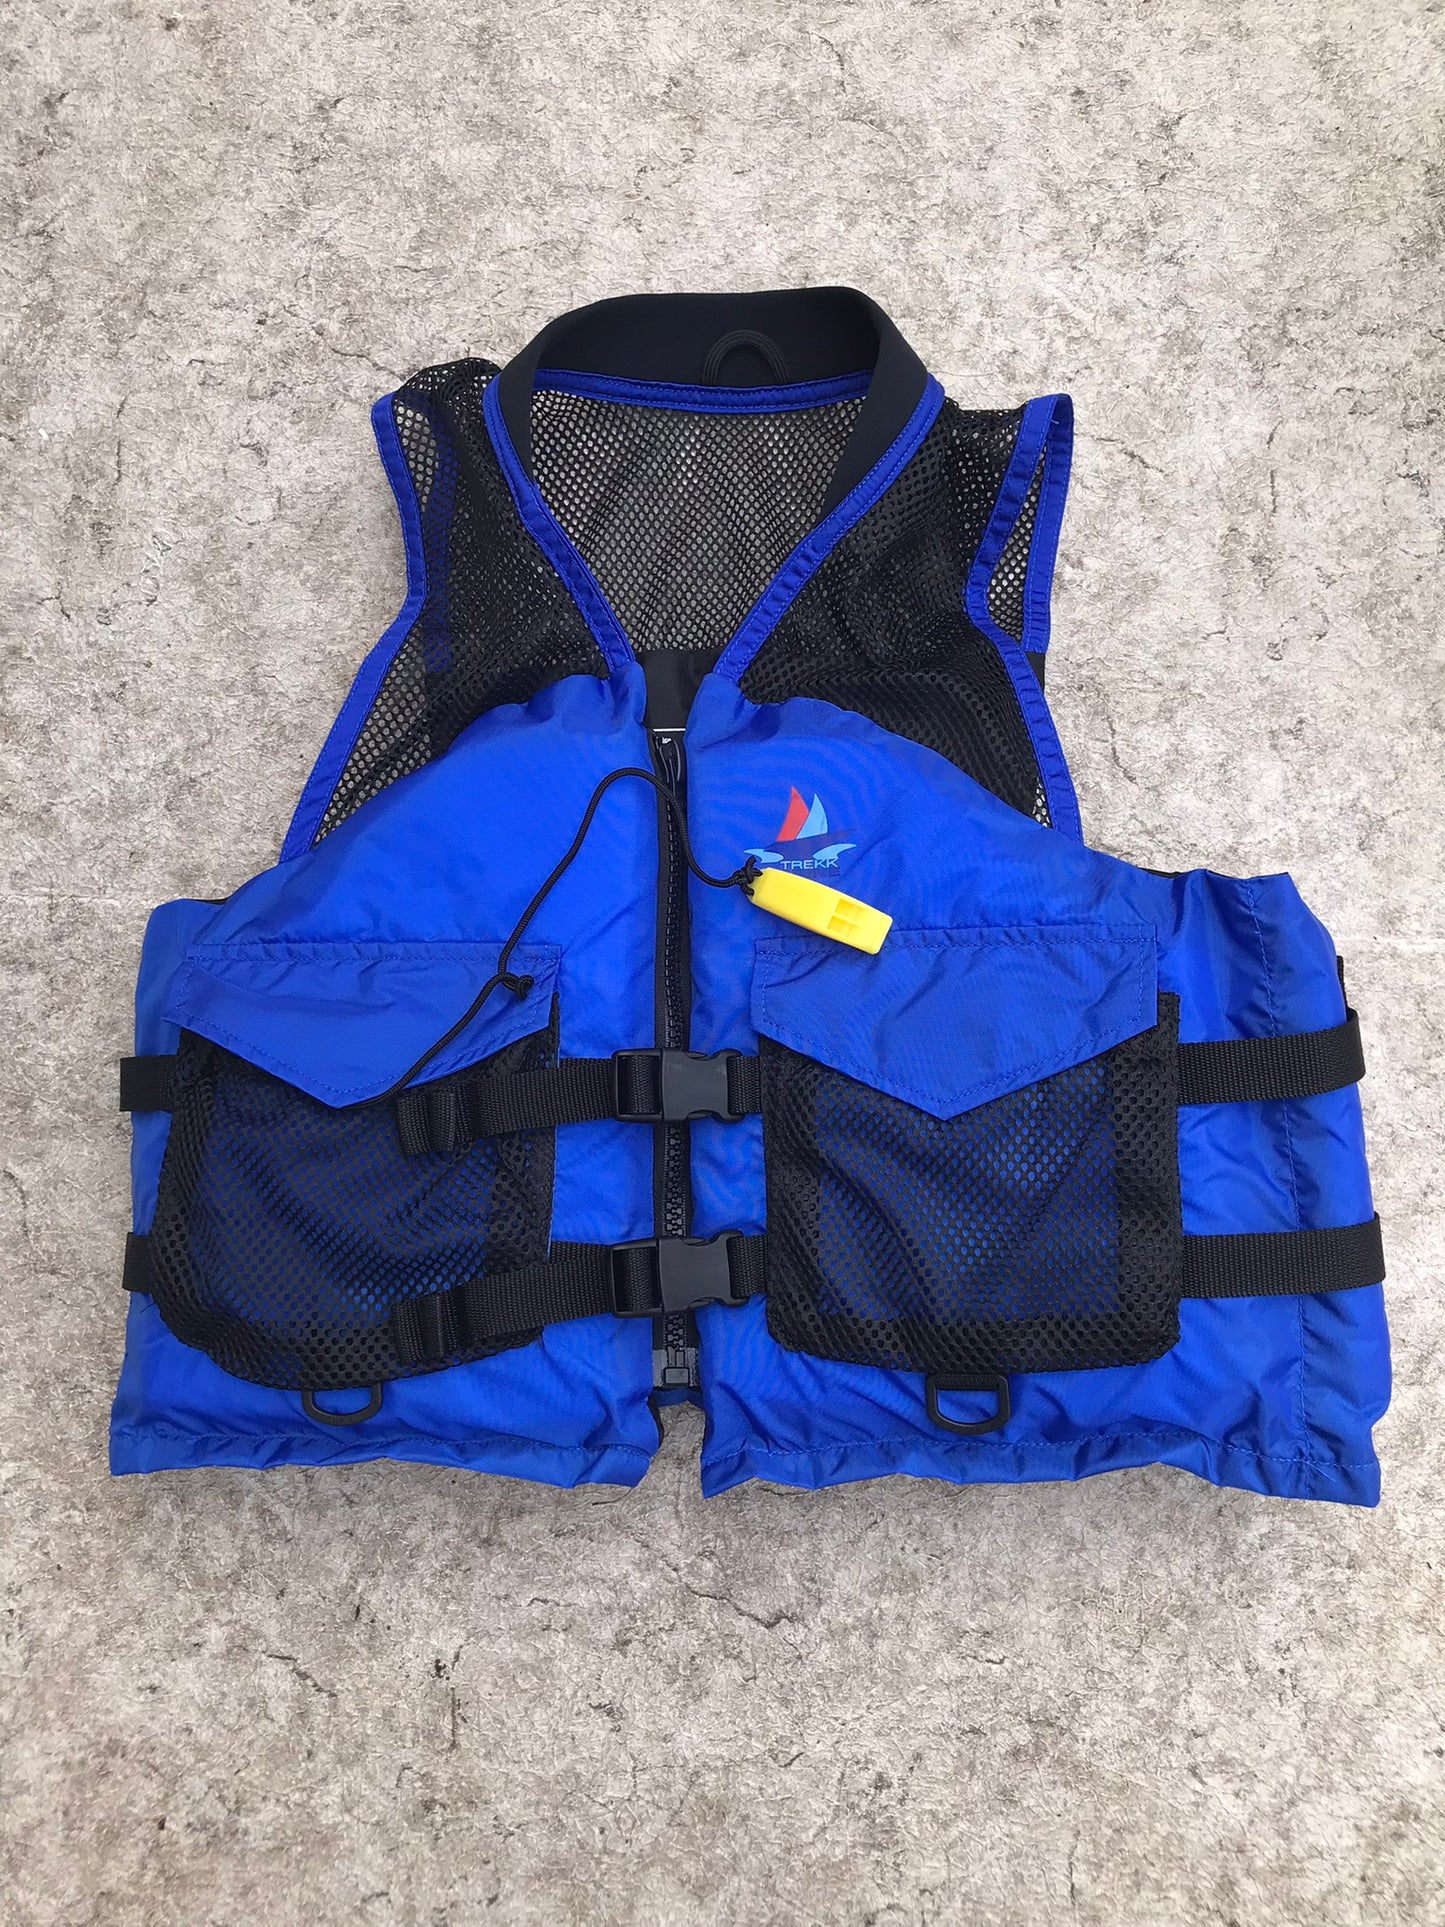 Life Jacket Adult Size 120-200 Lb Trekk Marine Kayak Paddle Canoe Universal Adjustable Blue on Blue With Whistle New Demo Model